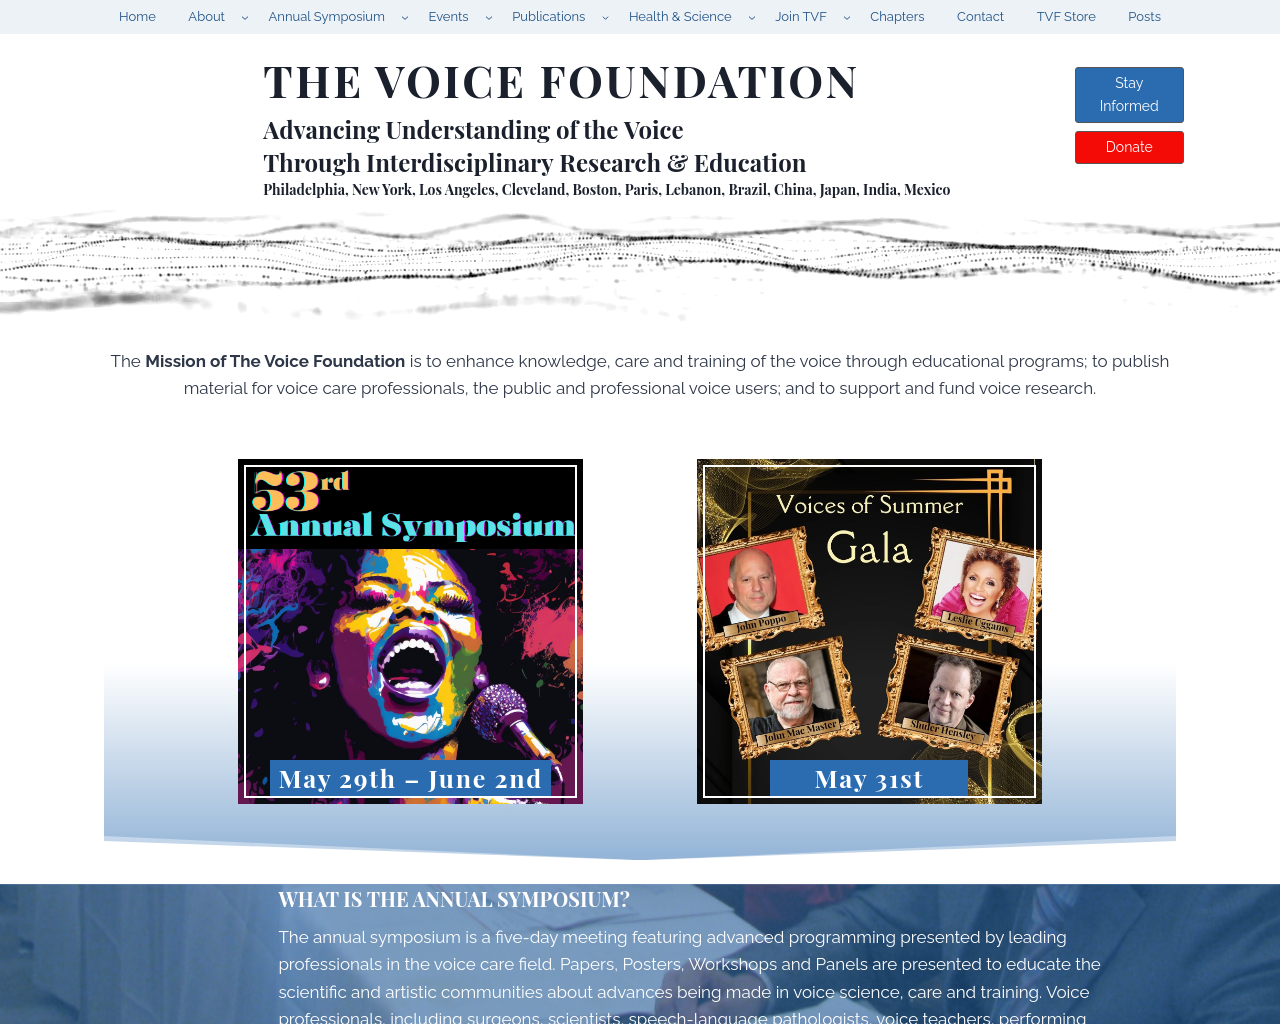 voicefoundation.org